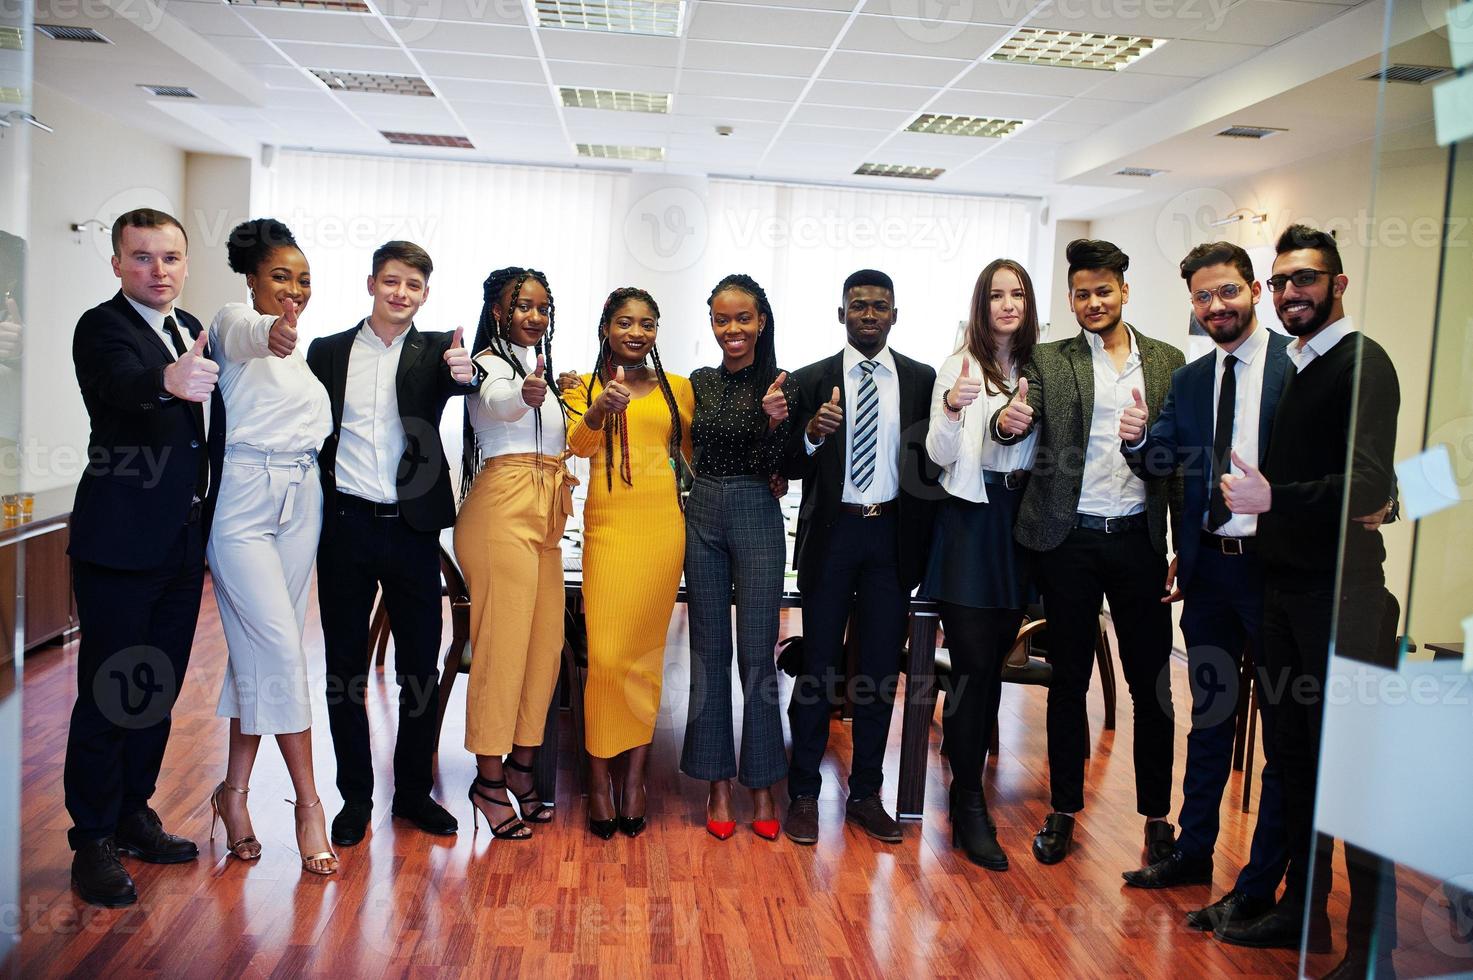 grote groep van elf multiraciale zakenmensen die op kantoor staan en samen duim opdagen. diverse groep medewerkers in formele kleding. foto